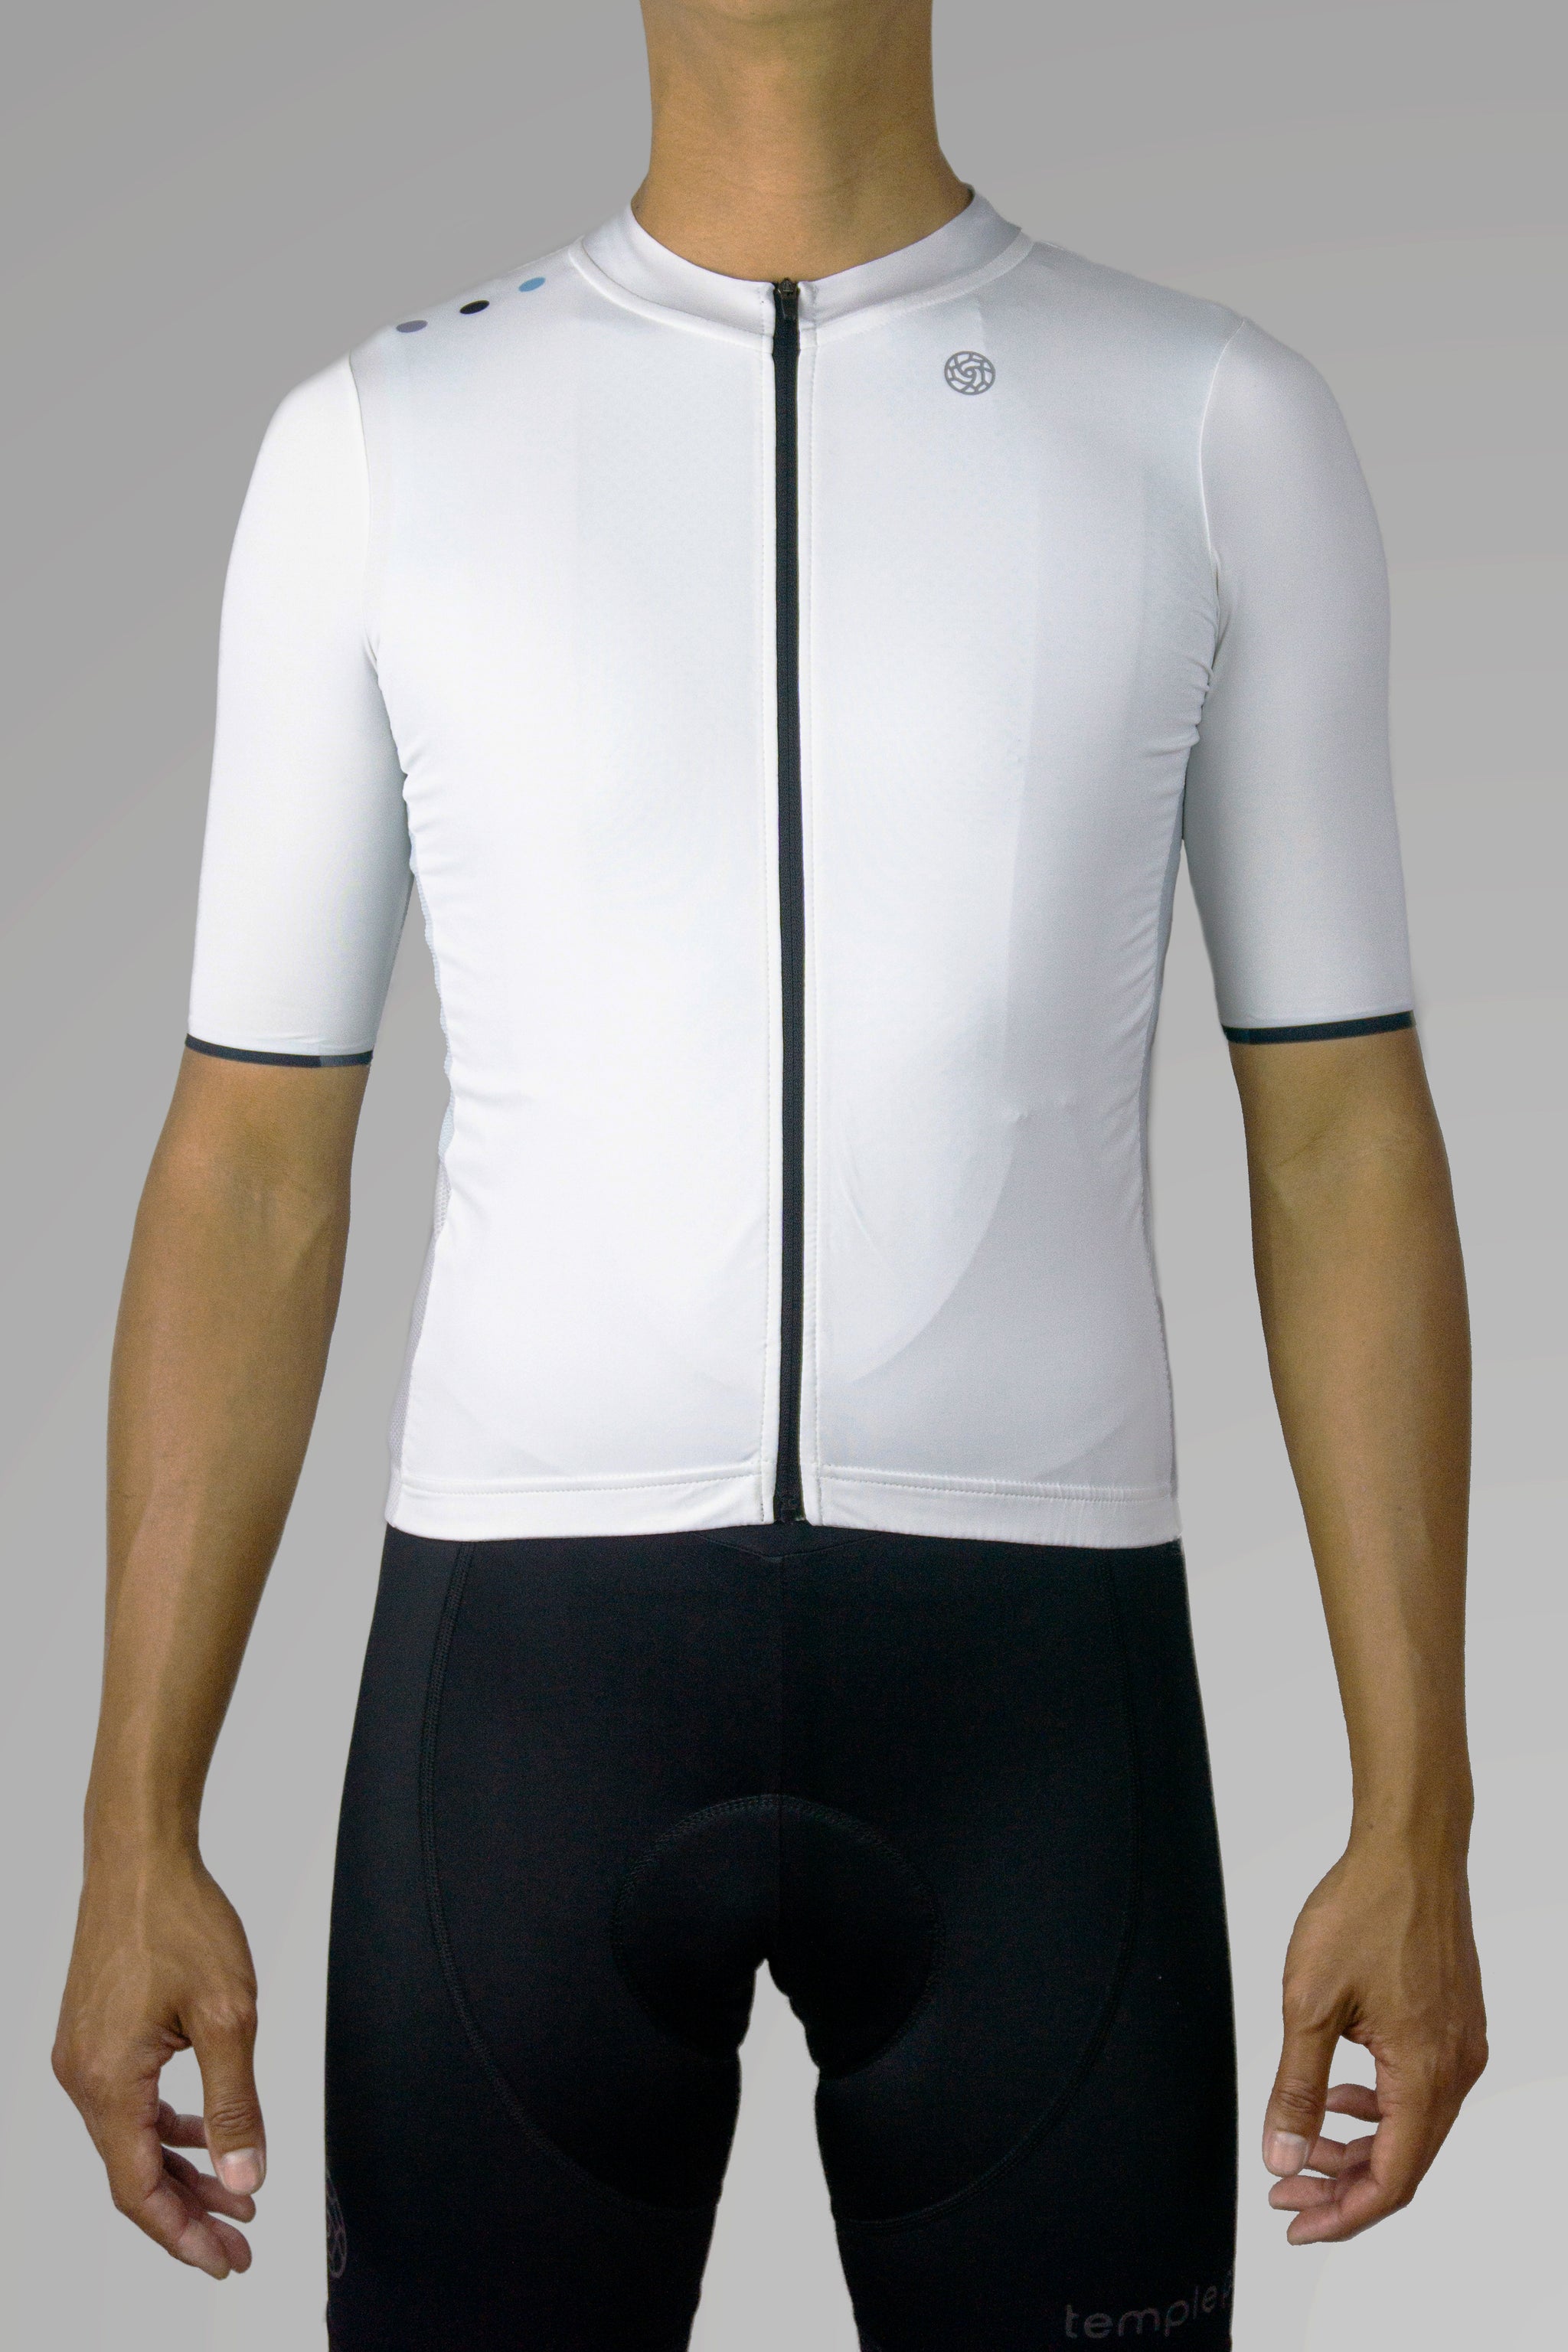 stylish cycling jersey